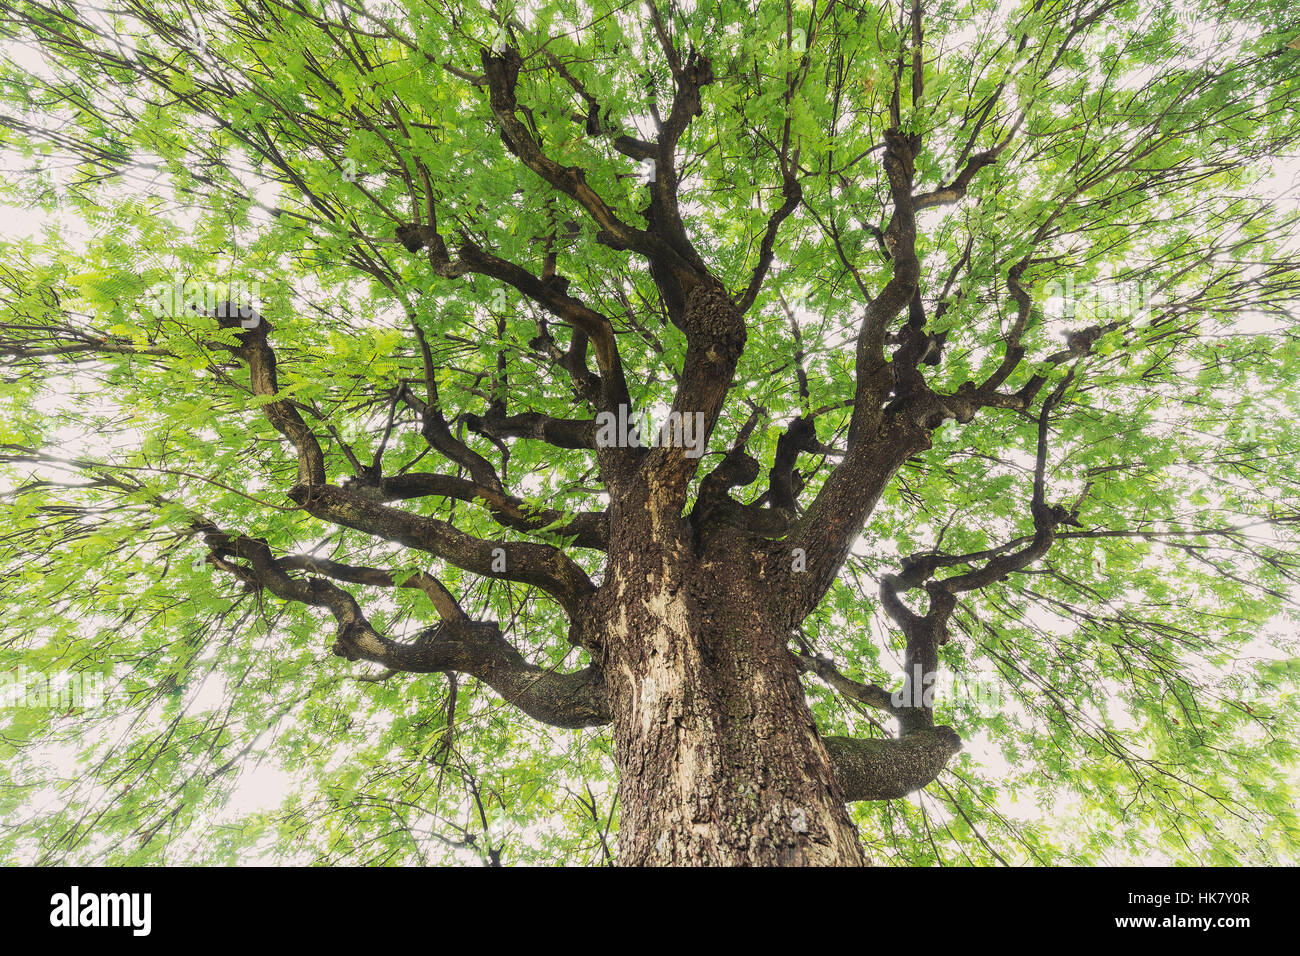 Un aspecto de gran Tamarind Tree tiene una amplia expansión ramas y hojas verdes frescas rodean en la parte superior con el cielo azul como fondo. Foto de stock